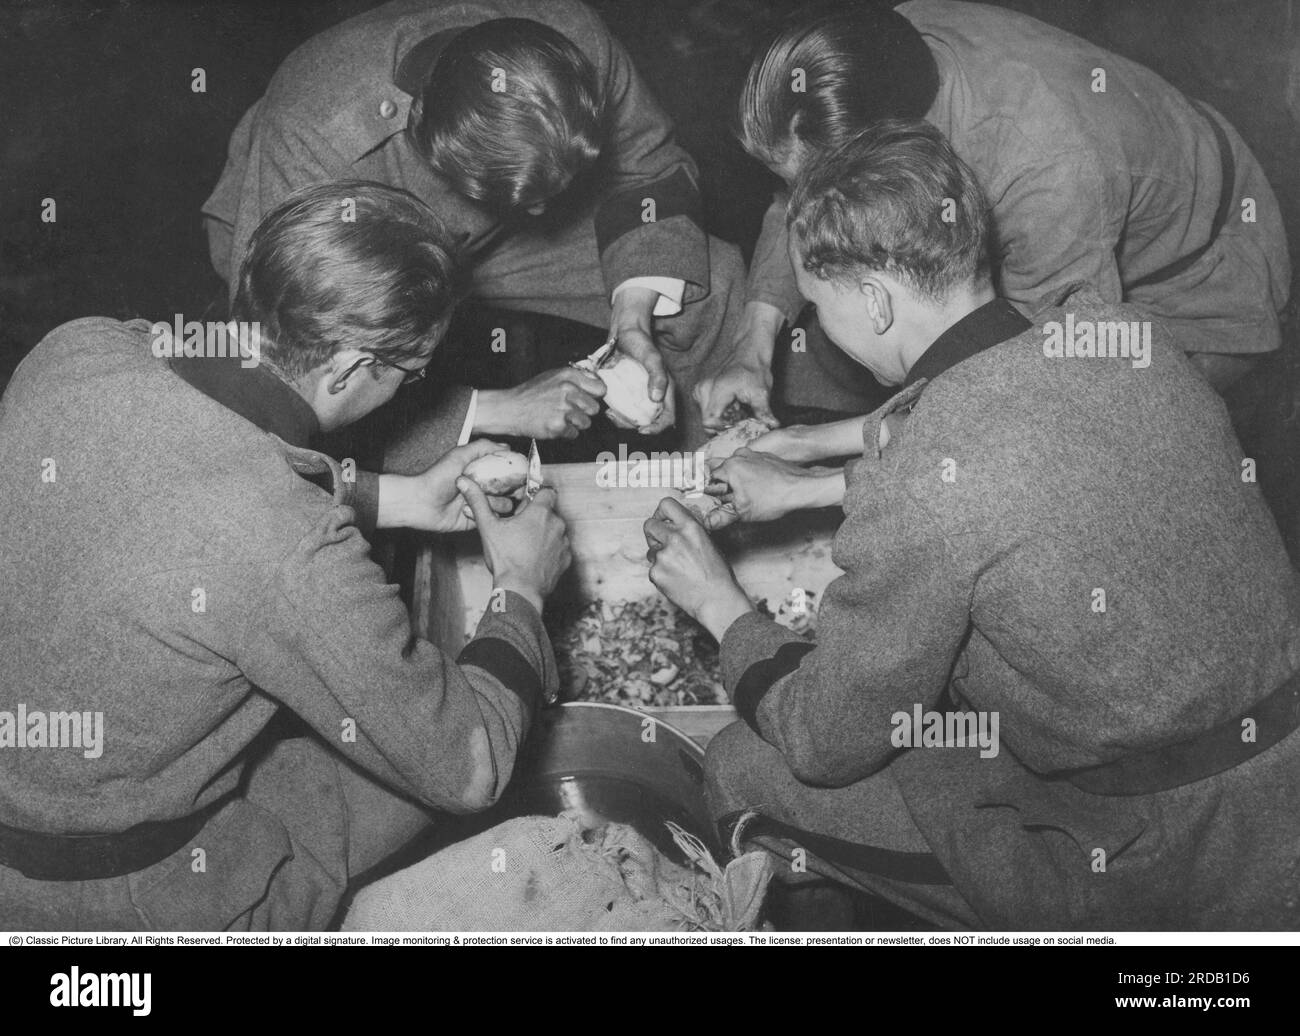 Der zweite Weltkrieg in Schweden. Schwedische Soldaten irgendwo in Schweden. Hier schälen vier junge Soldaten, die Küchendienst erhalten haben, Kartoffeln. Ein Job, der normalerweise keine beneidenswerte Arbeit war, sondern eher als Strafe angesehen wird. Schweden 1942 Stockfoto